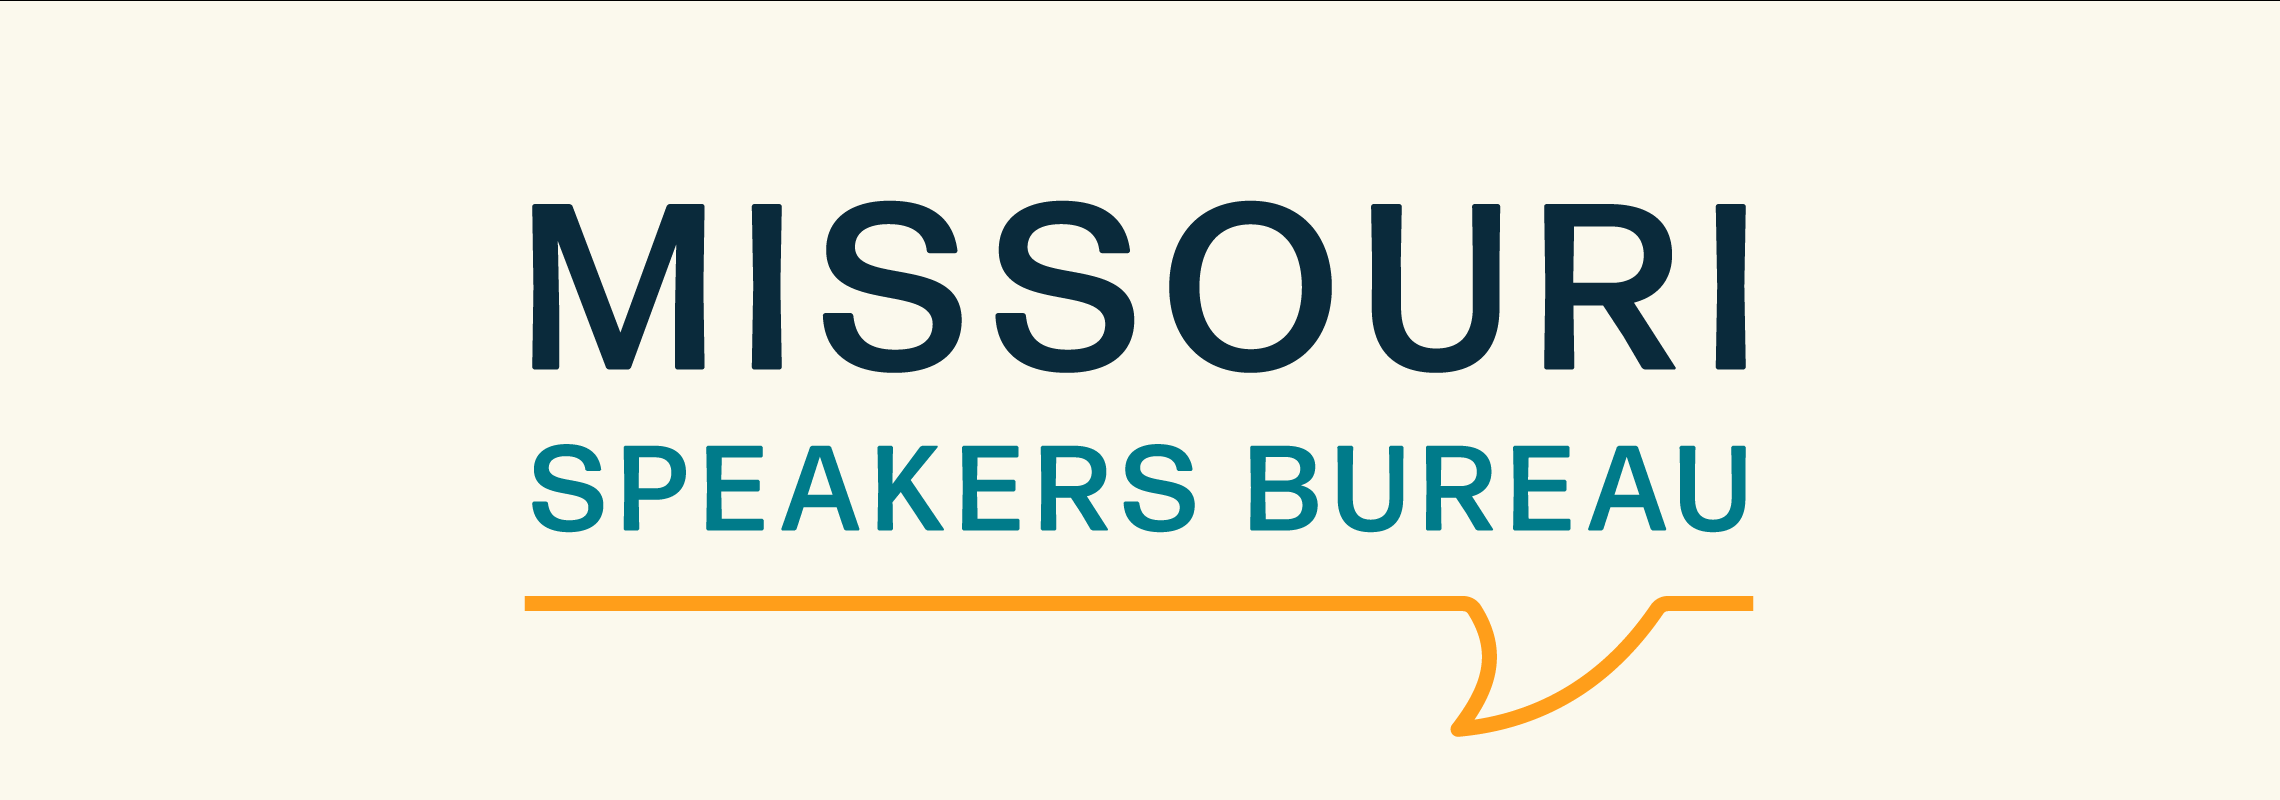 Missouri Speakers Bureau Logo